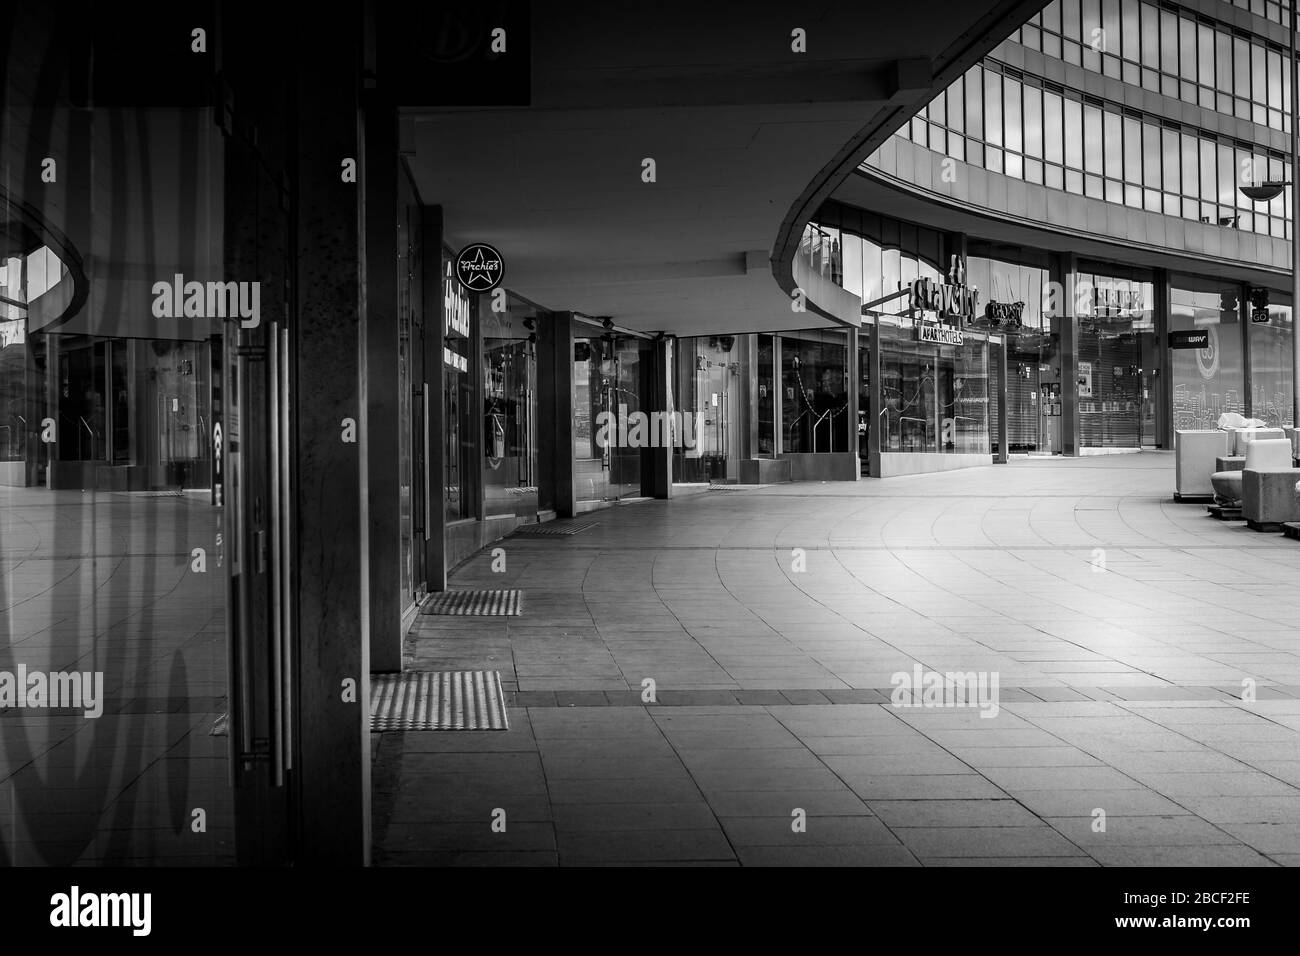 Approche de la gare, Piccadilly Station, Manchester, Royaume-Uni. Les rues vides, les entreprises fermées pendant l'épidémie de coronavirus, avril 2020. Banque D'Images